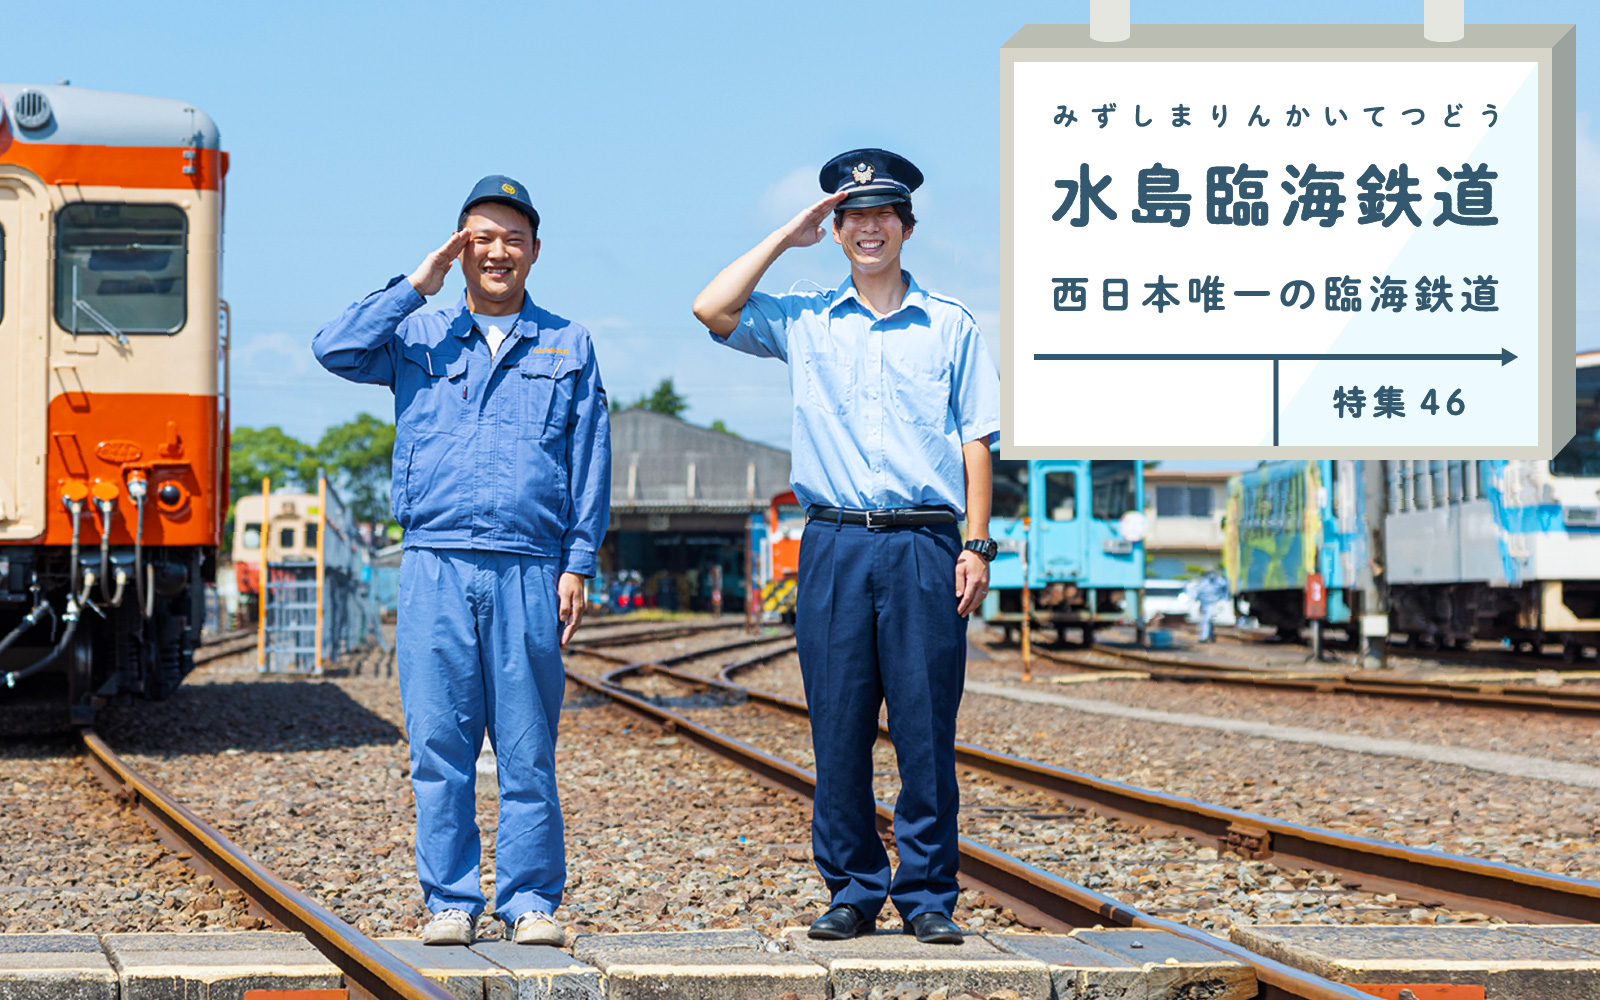 特集46 水島臨海鉄道 西日本唯一の臨海鉄道 水島工業地帯とともに発展した水島臨海鉄道とは